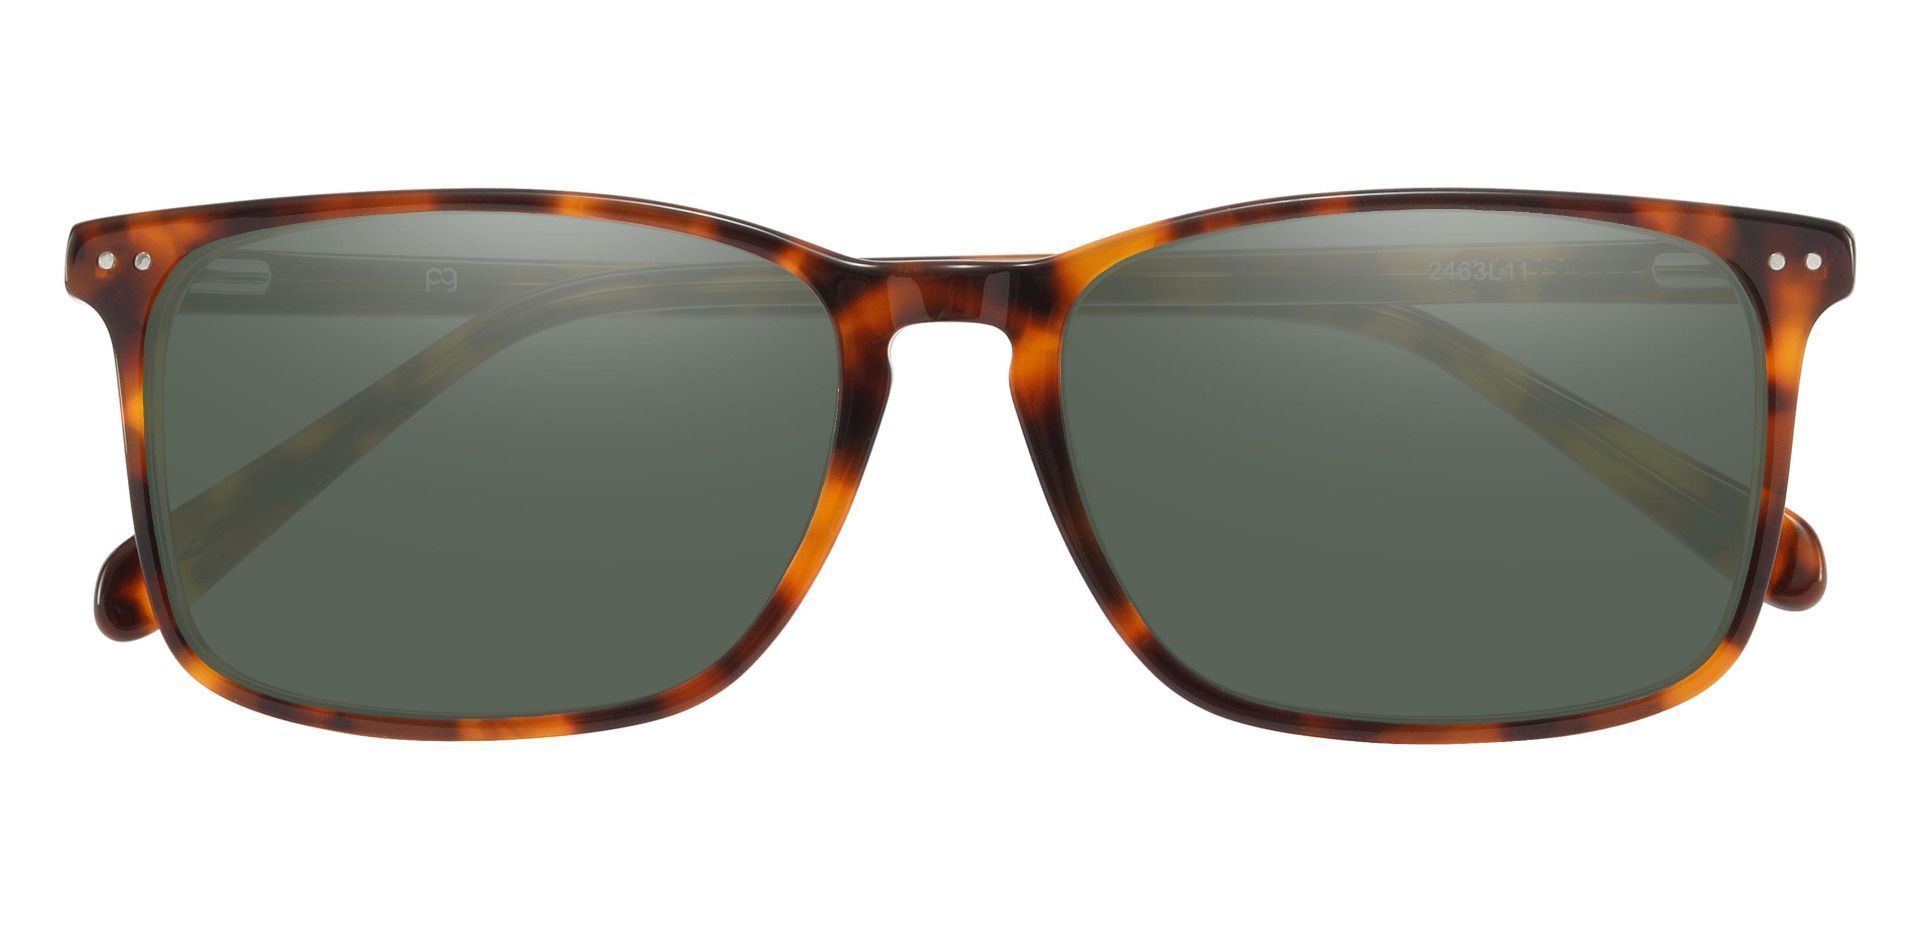 Finney Rectangle Lined Bifocal Sunglasses - Tortoise Frame With Green Lenses